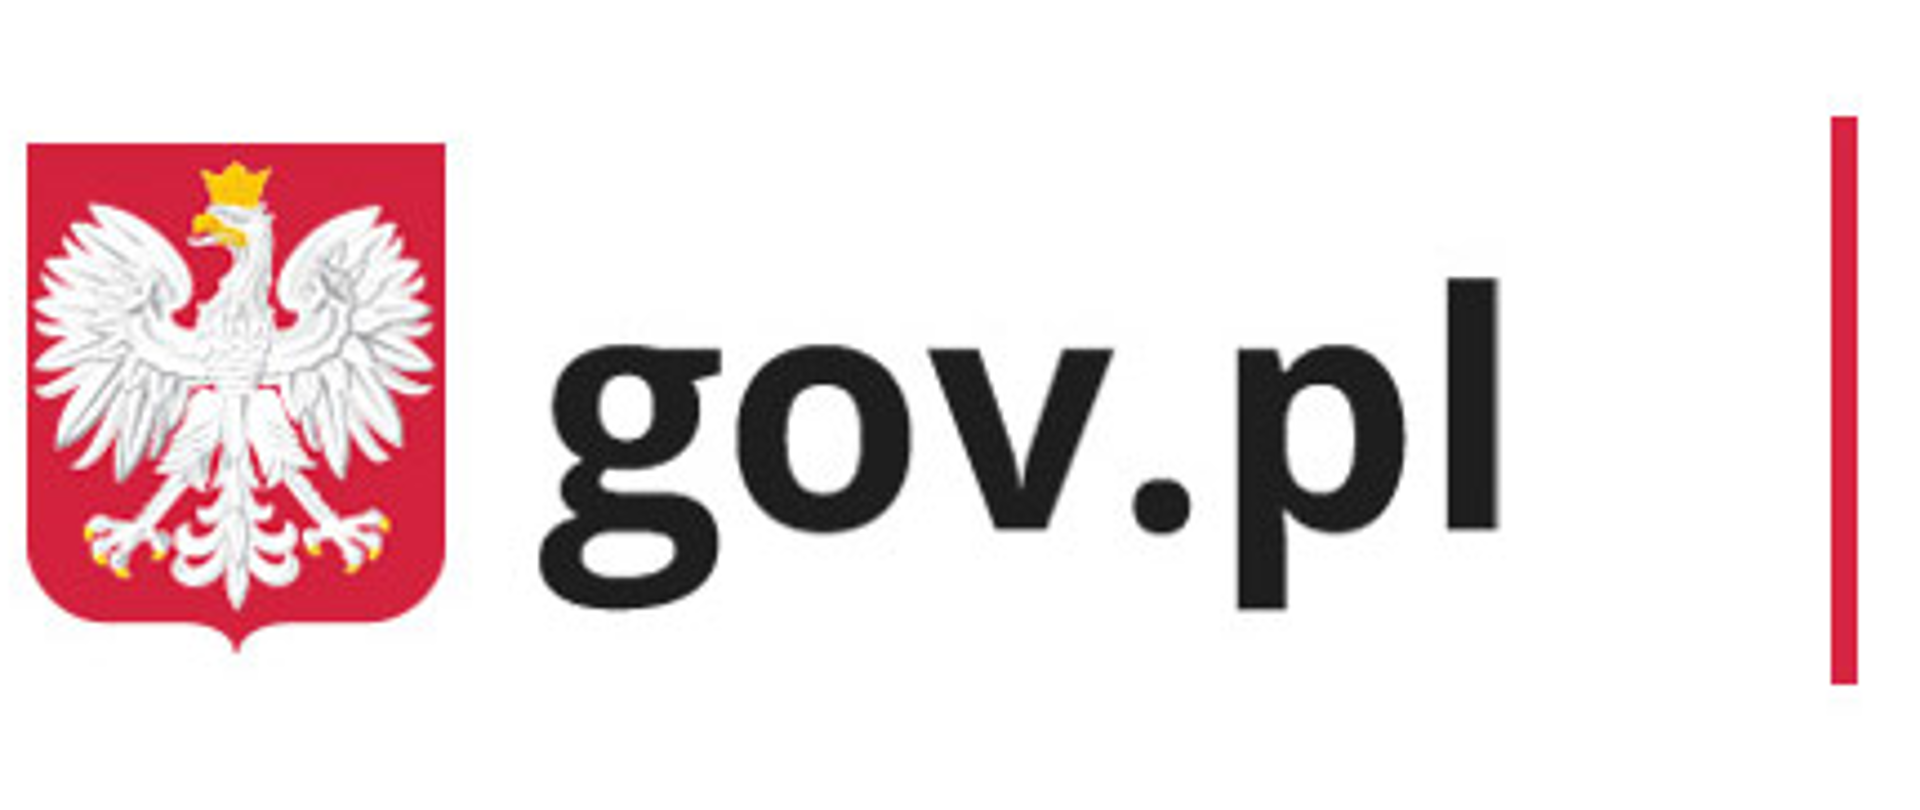 Logotyp portalu gov.pl